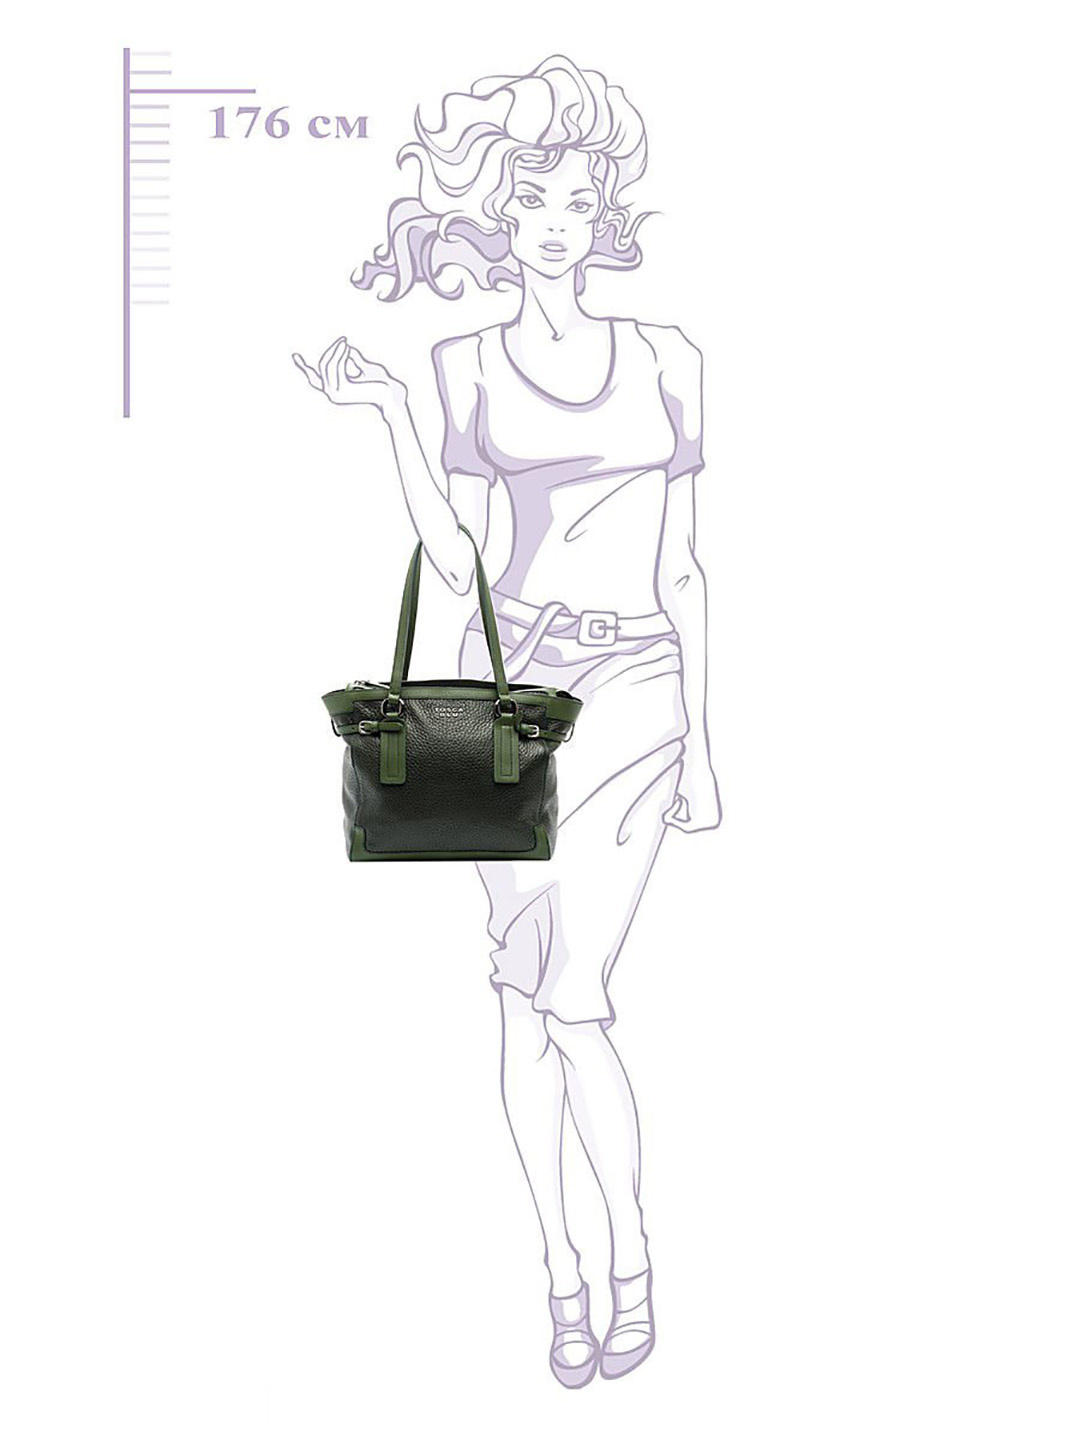 Фото Вместительная женская сумка-шоппер мягкой формы из плотной зернистой кожи Классические сумки